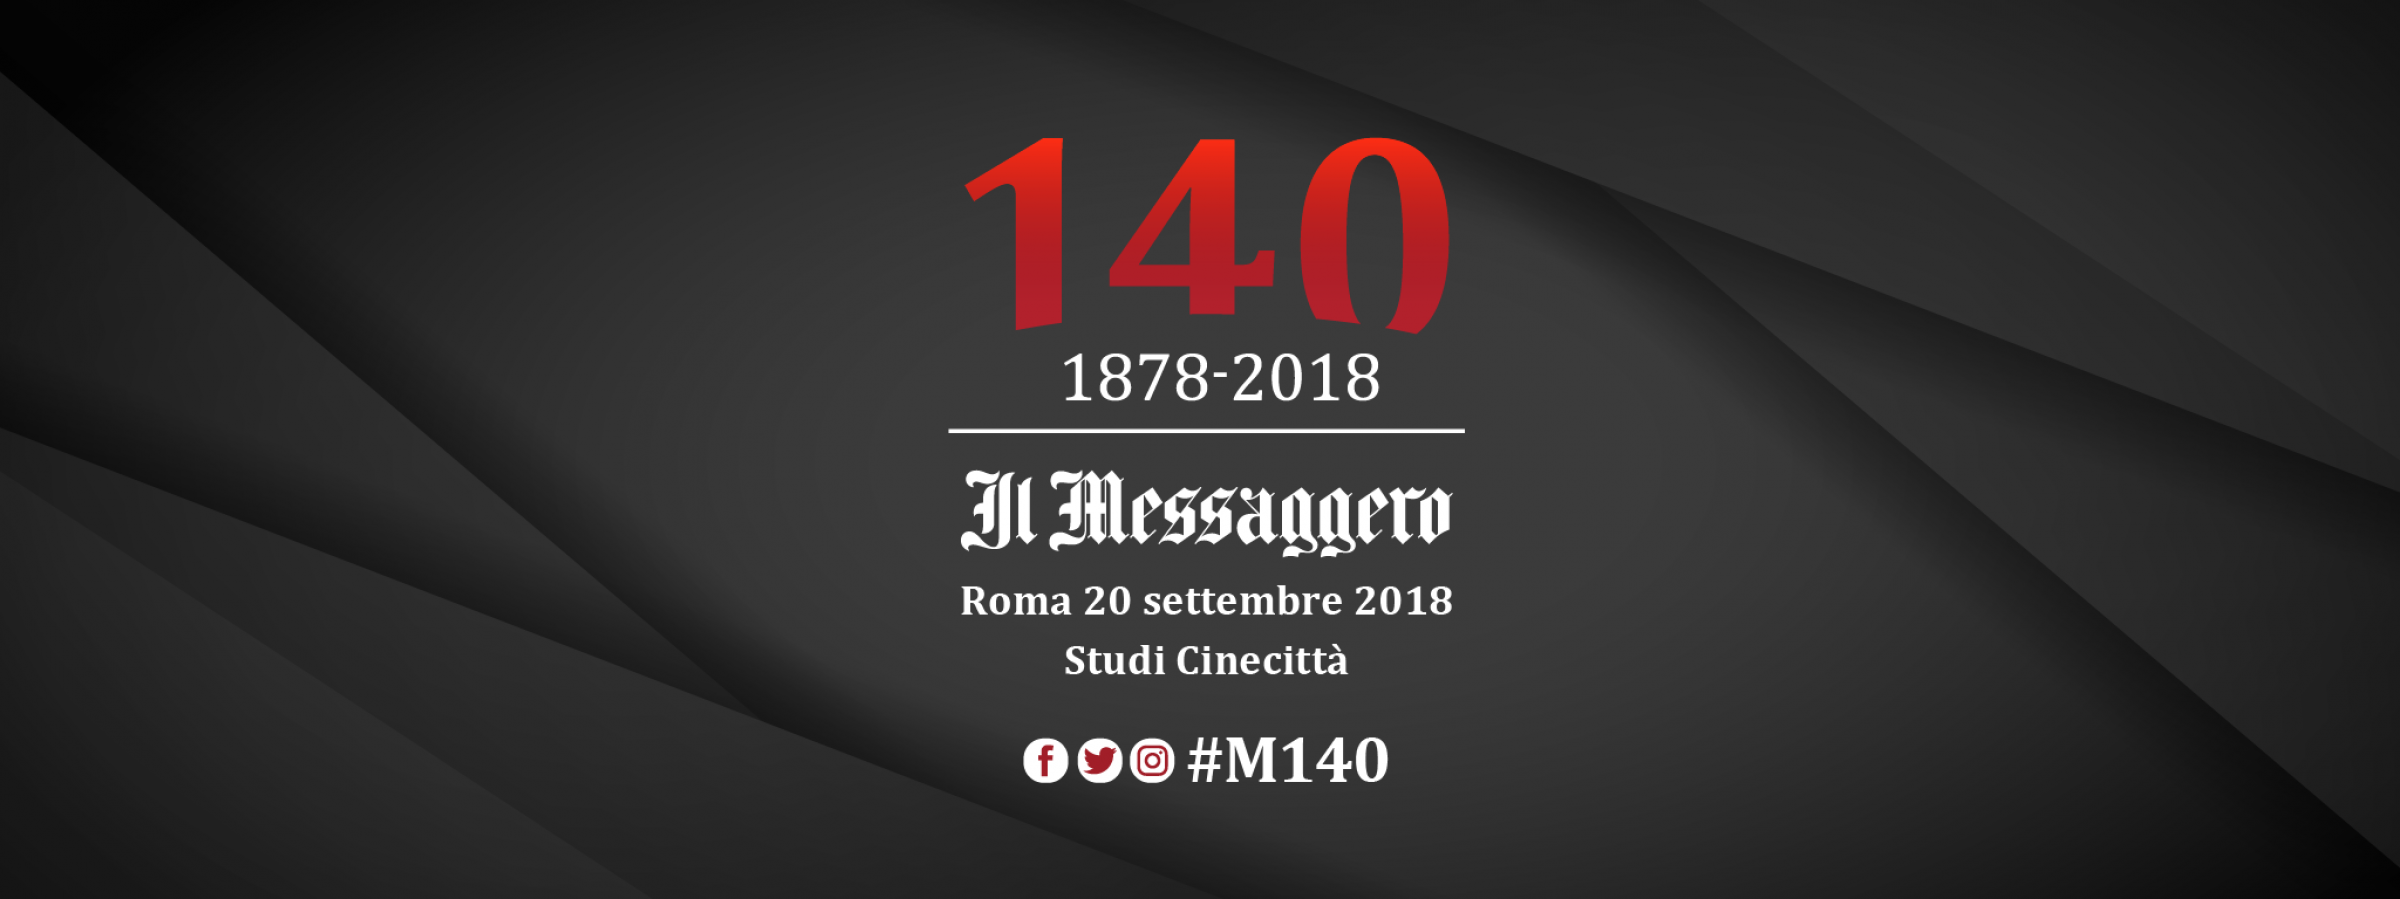 140 Anni Messaggero Event